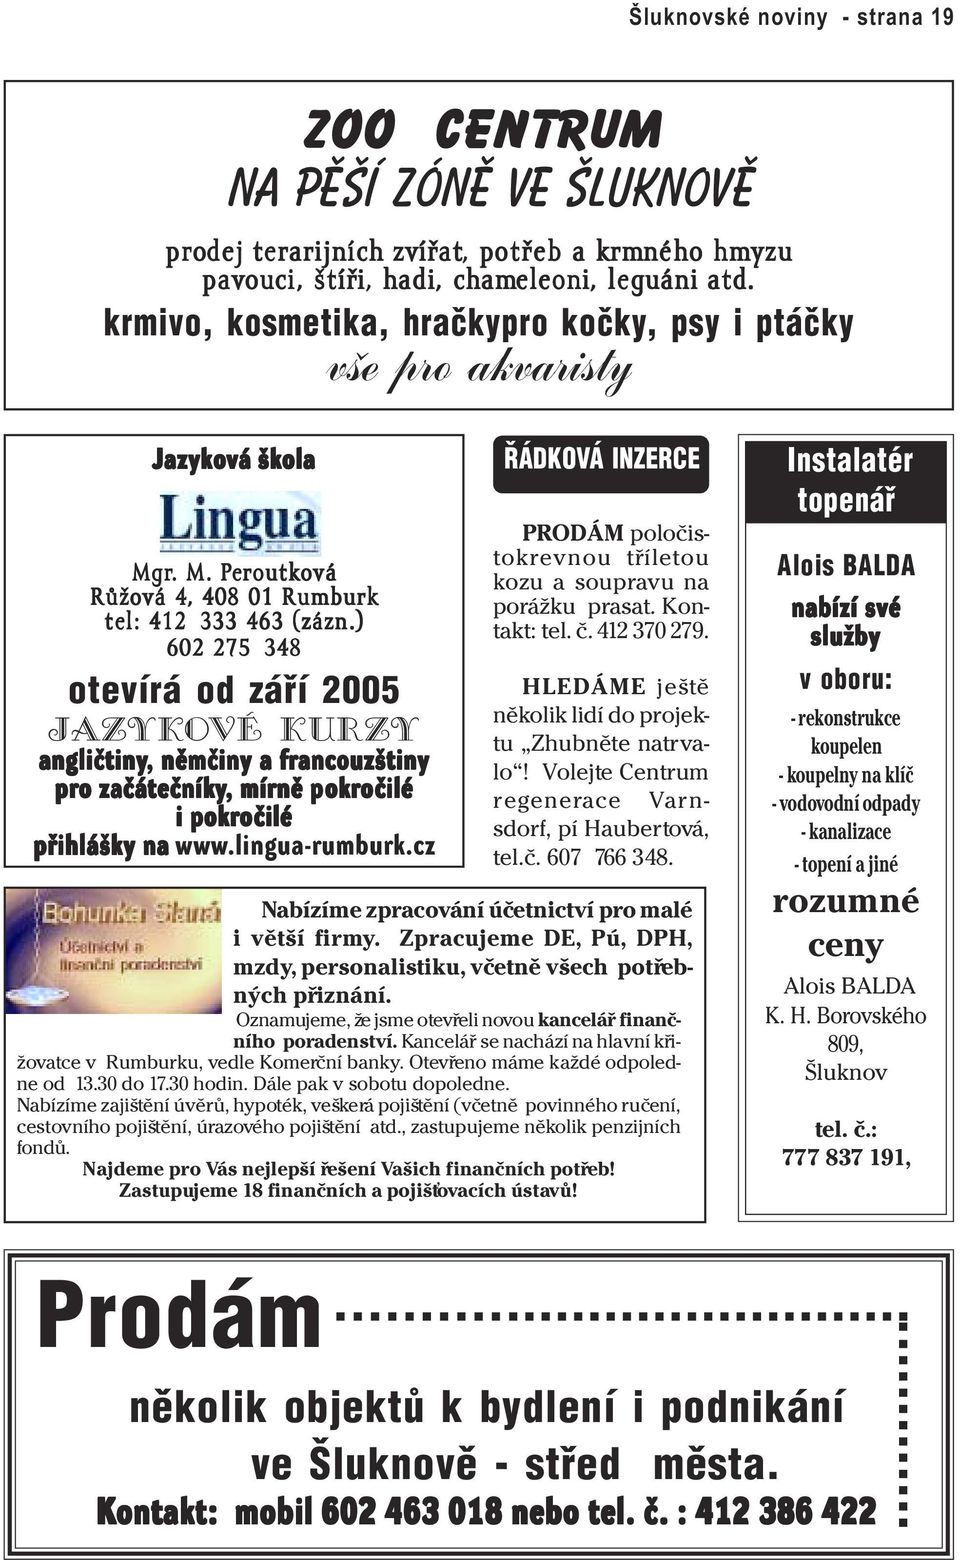 ) 602 275 348 otevírá od záøí 2005 jazykové kurzy angličtiny,, němčiny a francouzštiny pro začátečníky,, mírně pokro okročilé čilé i pokro okročilé čilé přihlášky na www.lingua-rumburk.